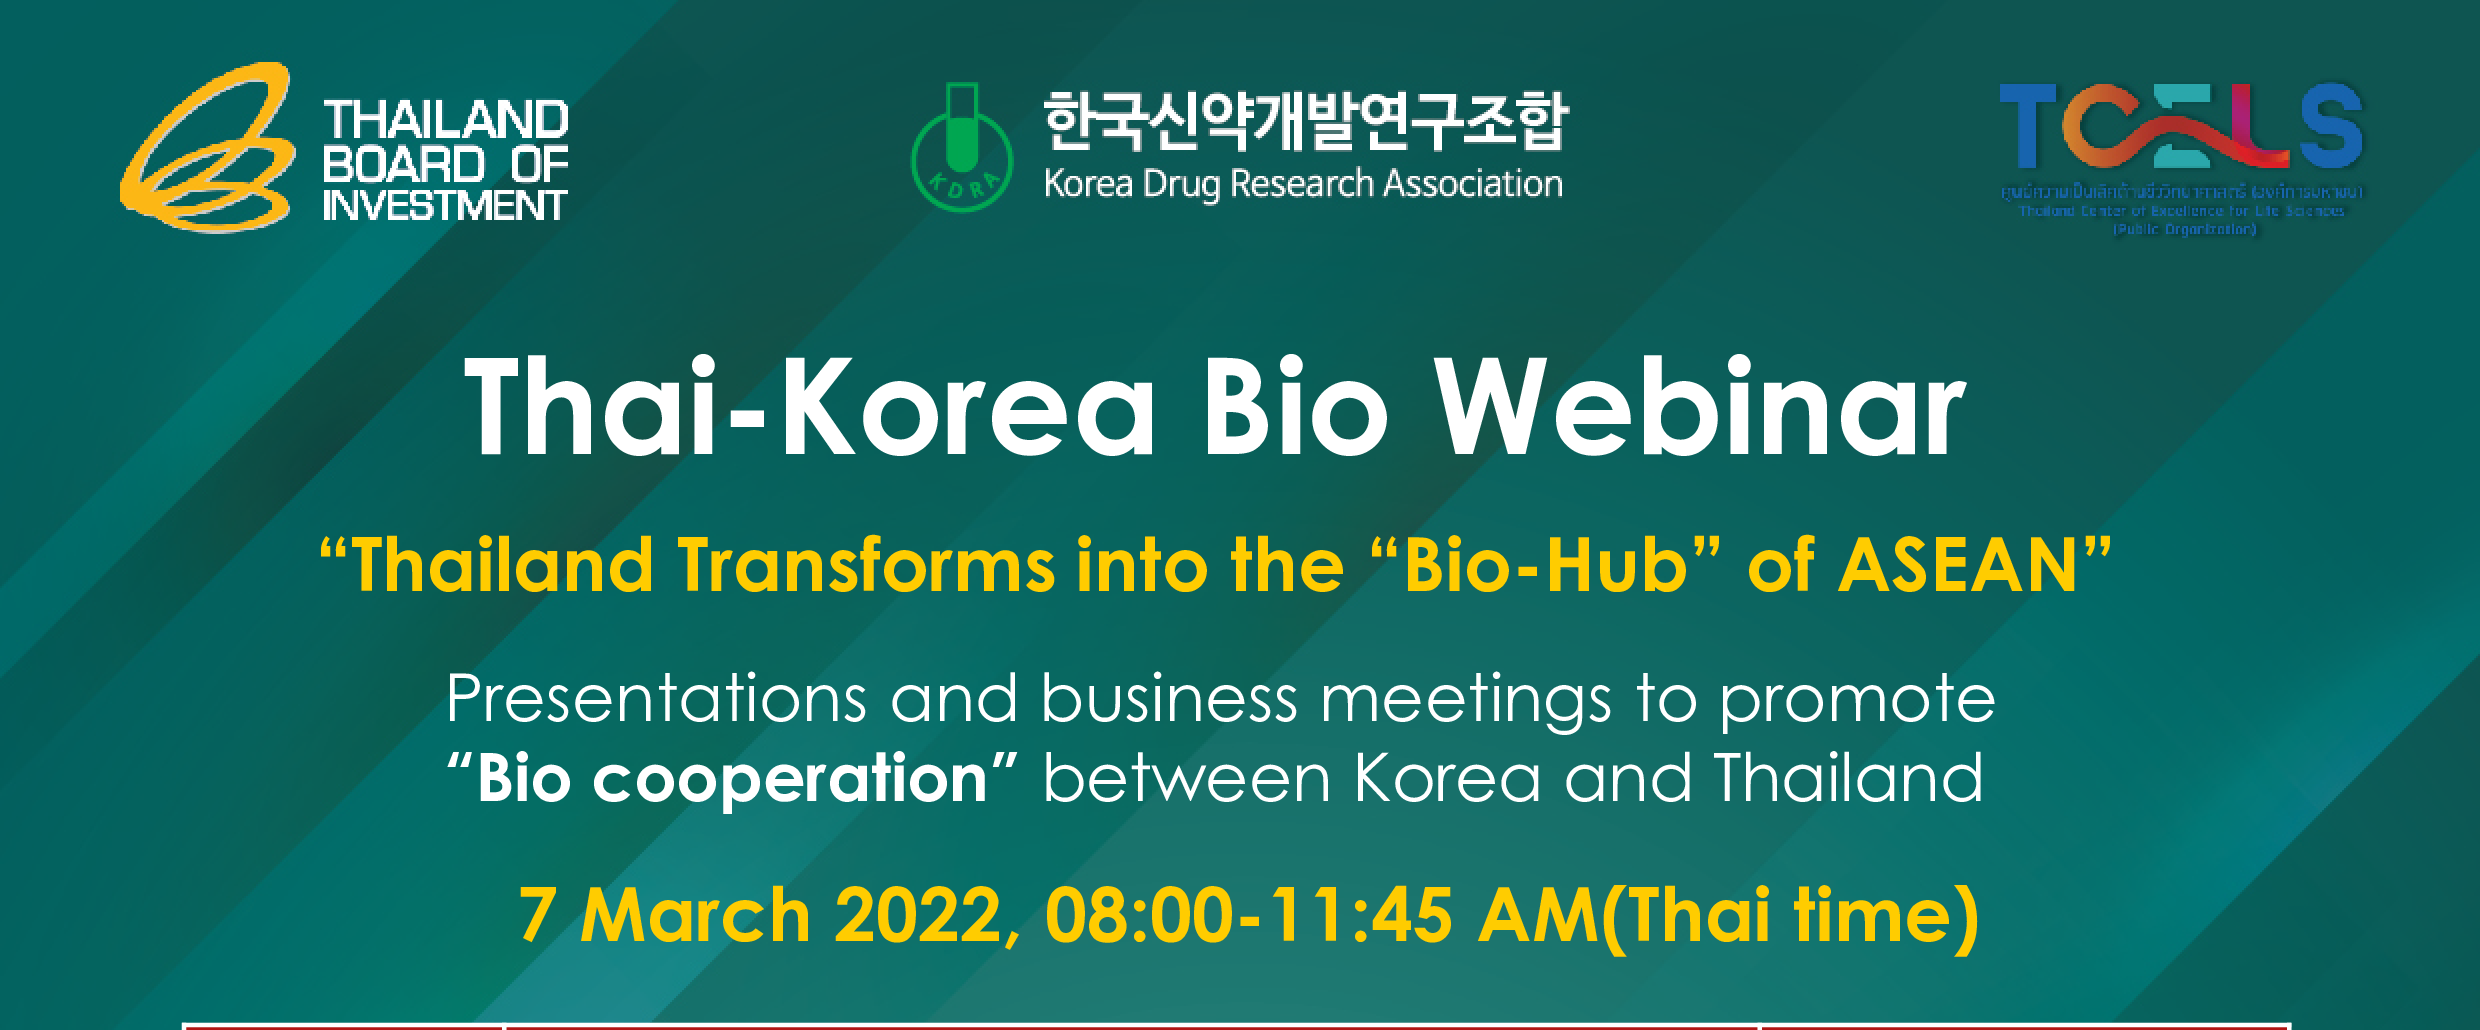 Thai-Korea Bio Webinar